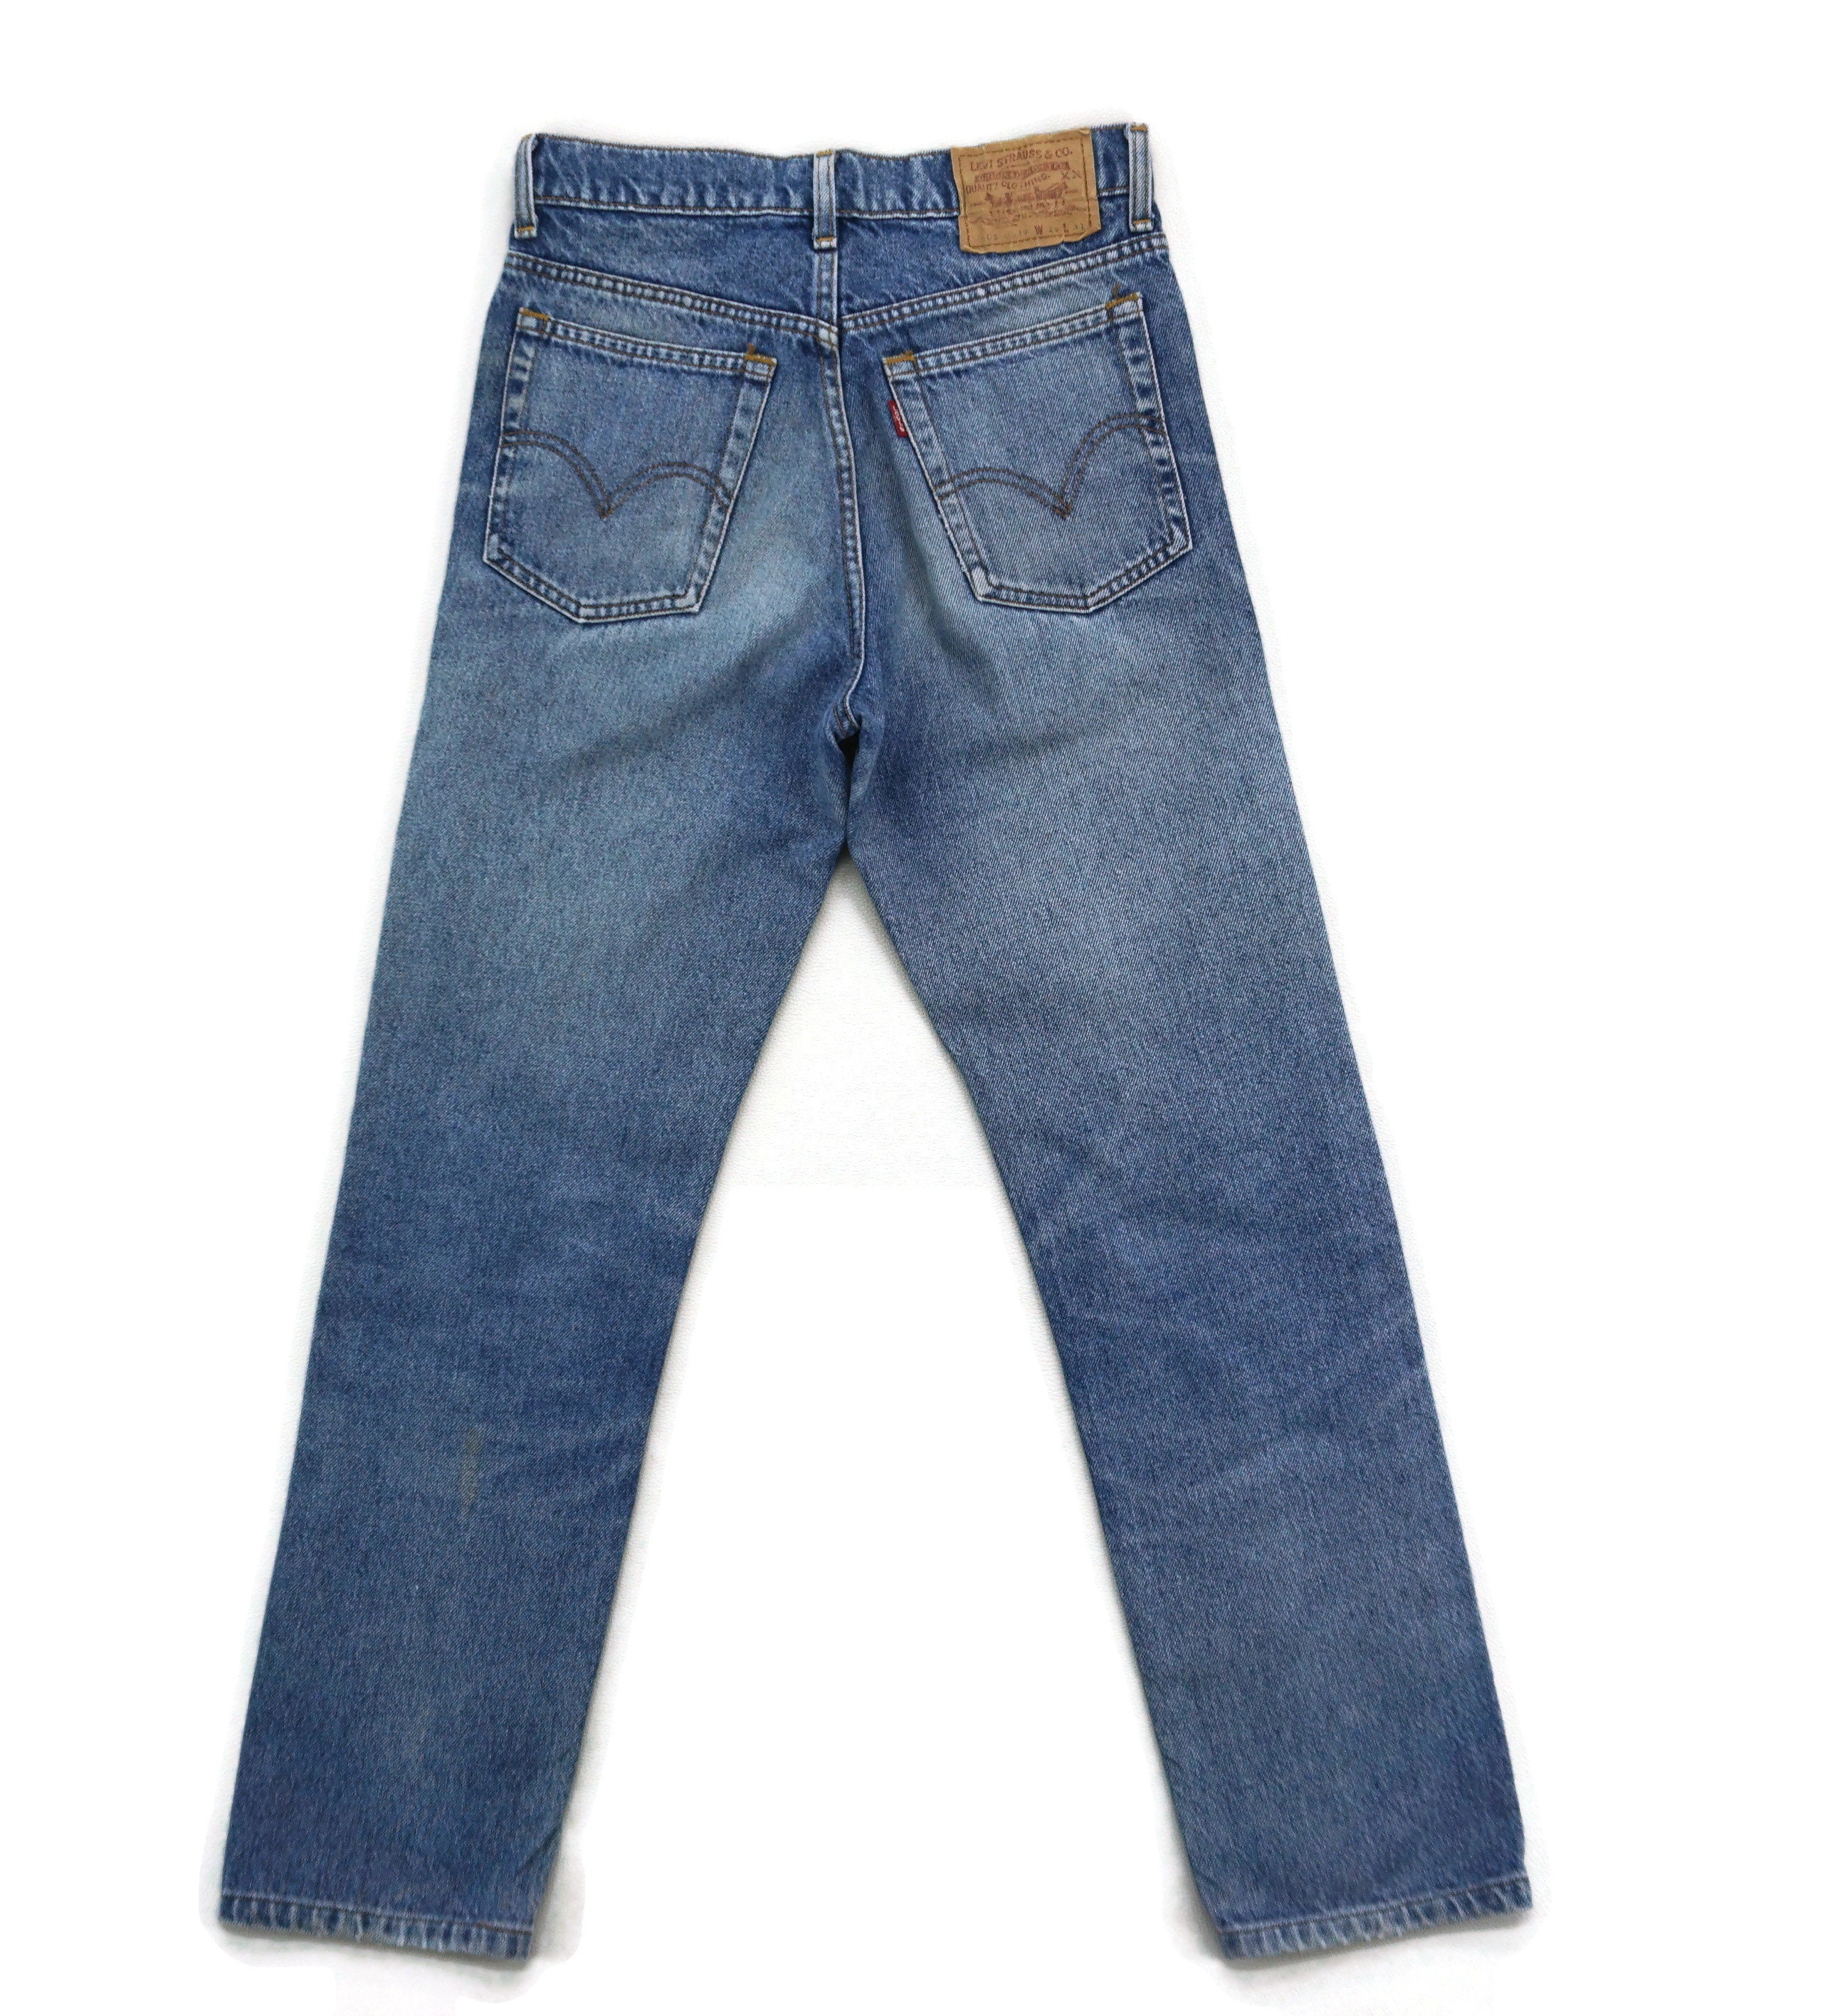 Levis 606 Jeans Size W27xL27 Vintage Levis 606-0217 High Rise | Etsy